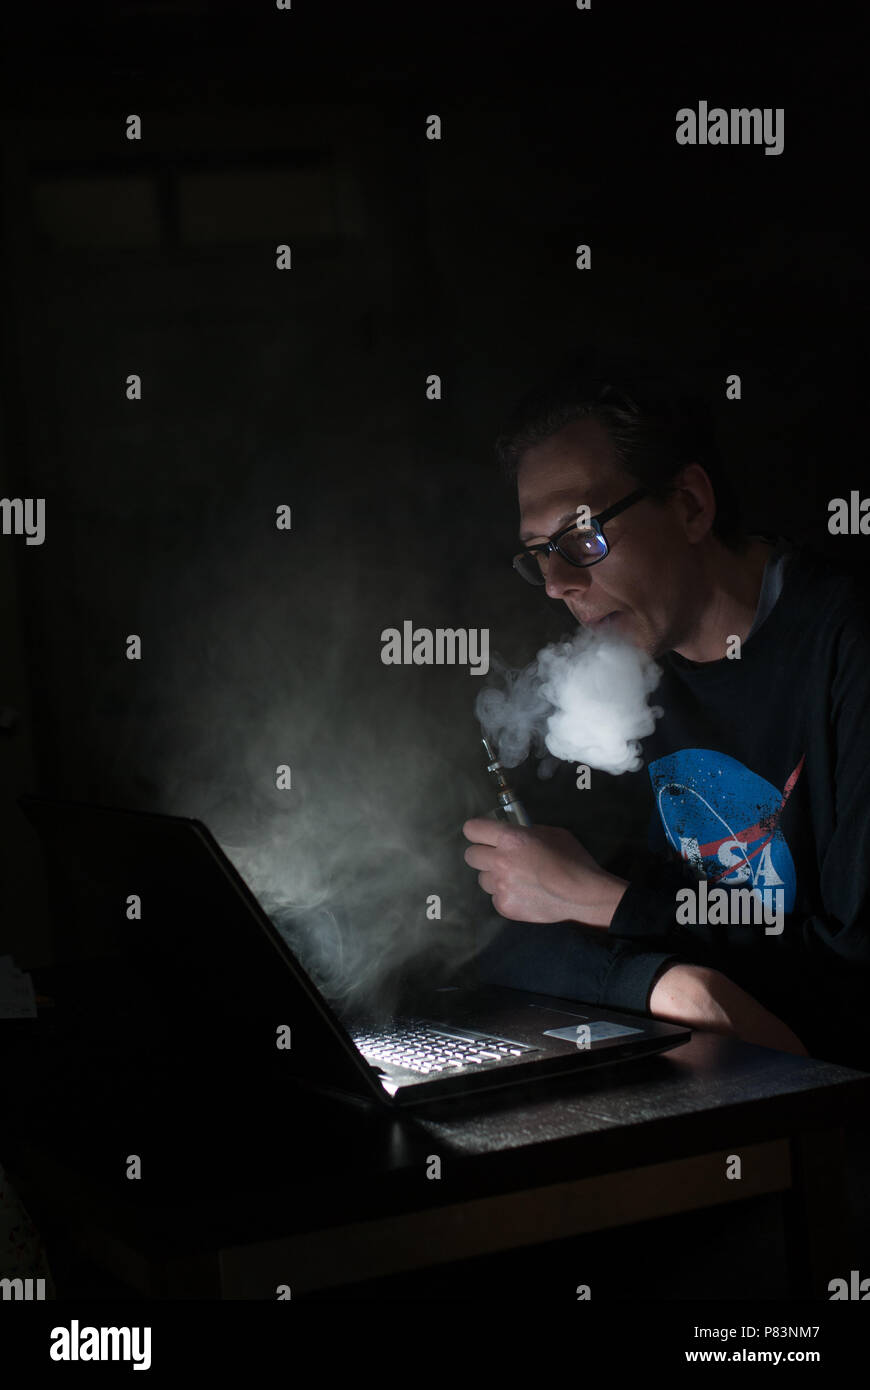 Programmatore pagine lavora a un computer portatile mentre vaping in una stanza buia. Foto Stock